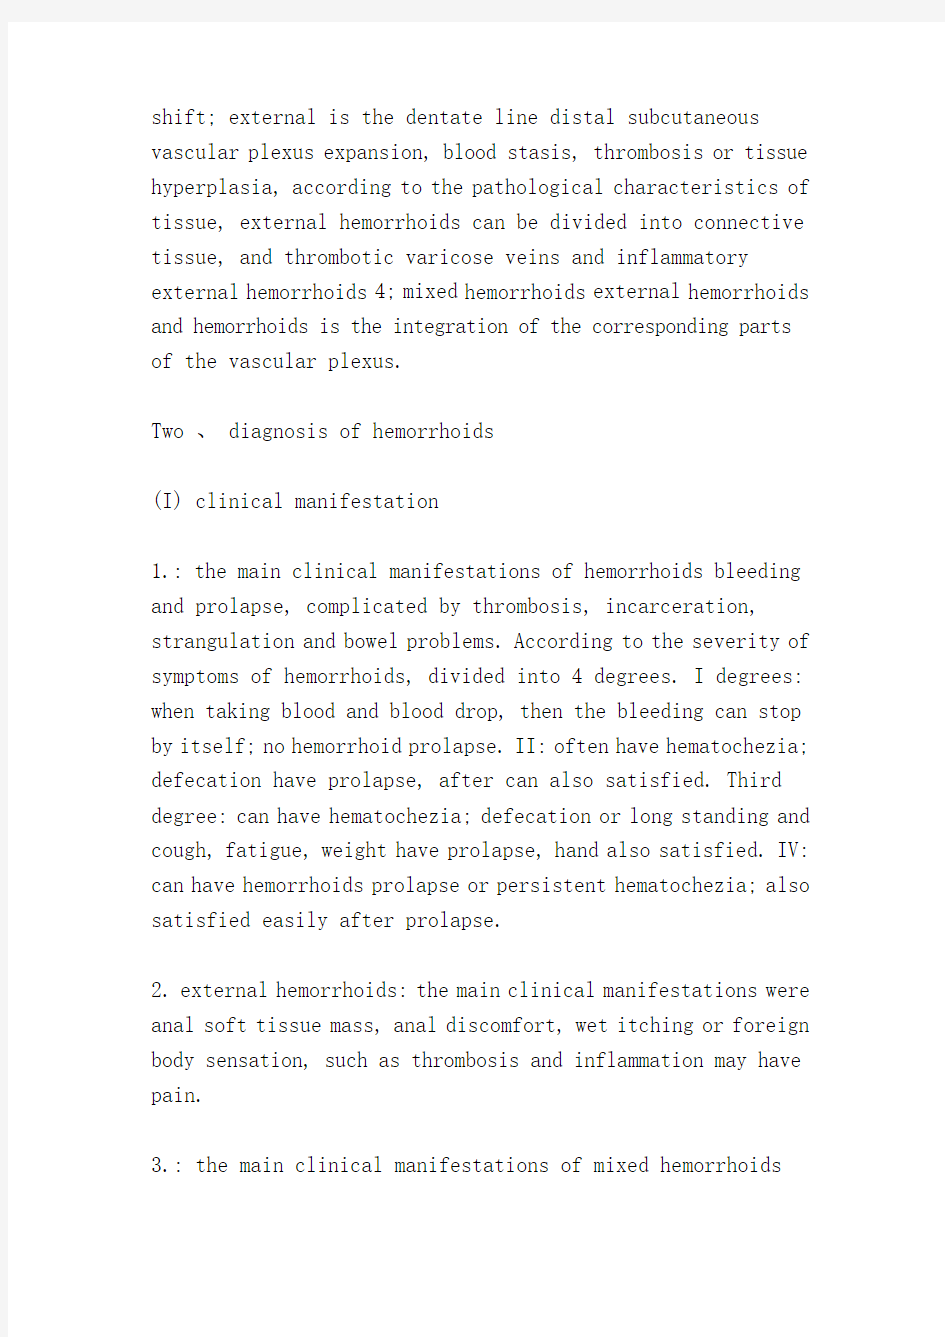 痔疮诊治指南2006(Guideline for diagnosis and treatment of hemorrhoids 2006)